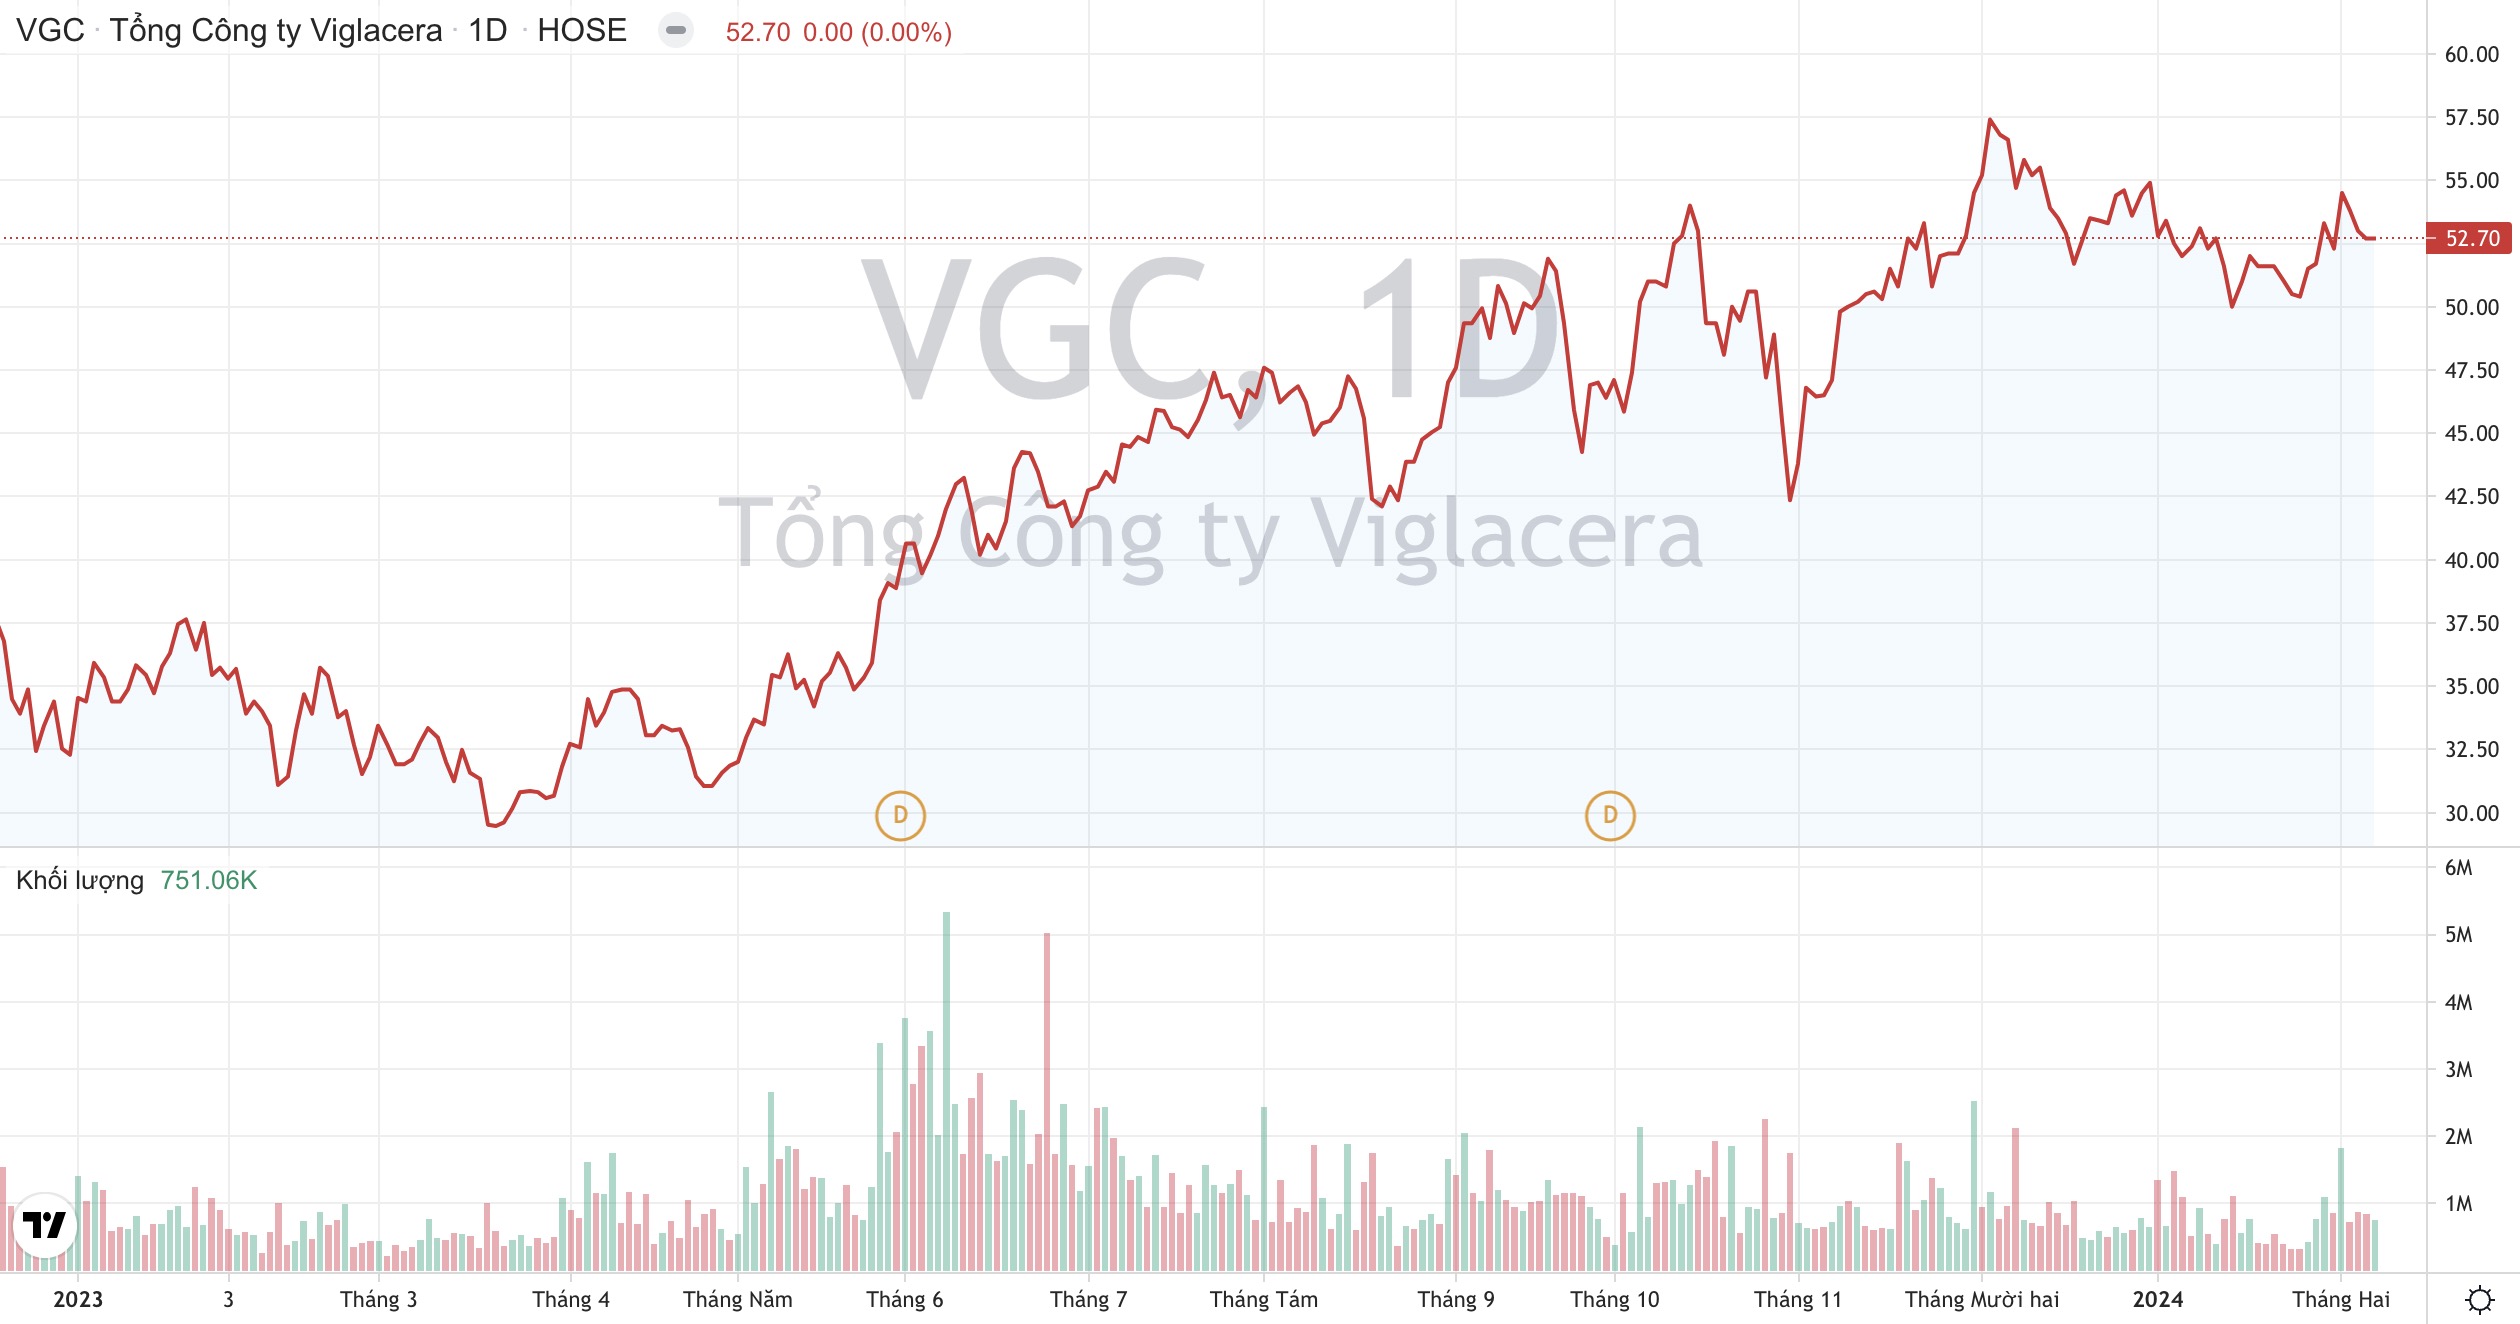 Giá cổ phiếu VGC Tổng Công ty Viglacera